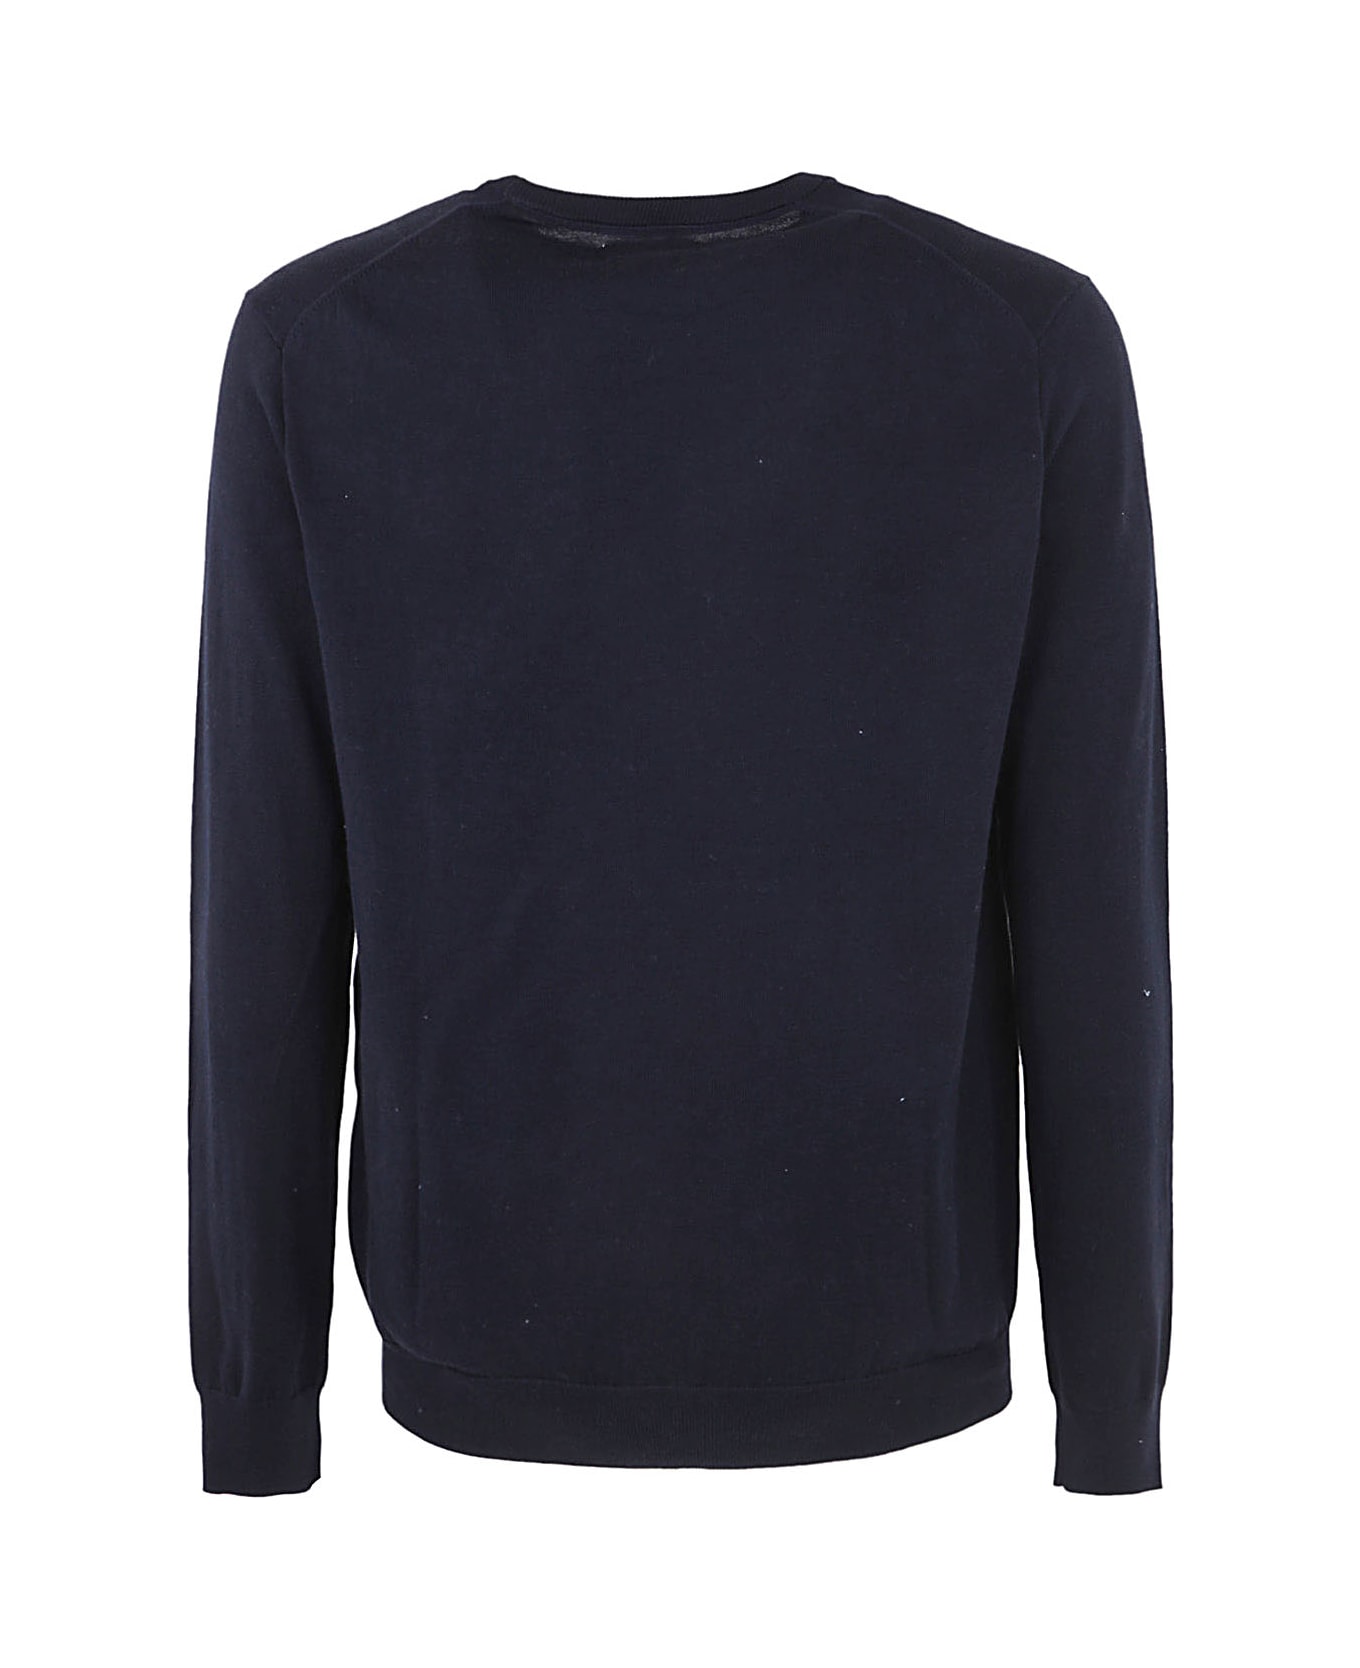 Polo Ralph Lauren Ls Sf Cn Pp Long Sleeve Sweater - Hunter Navy